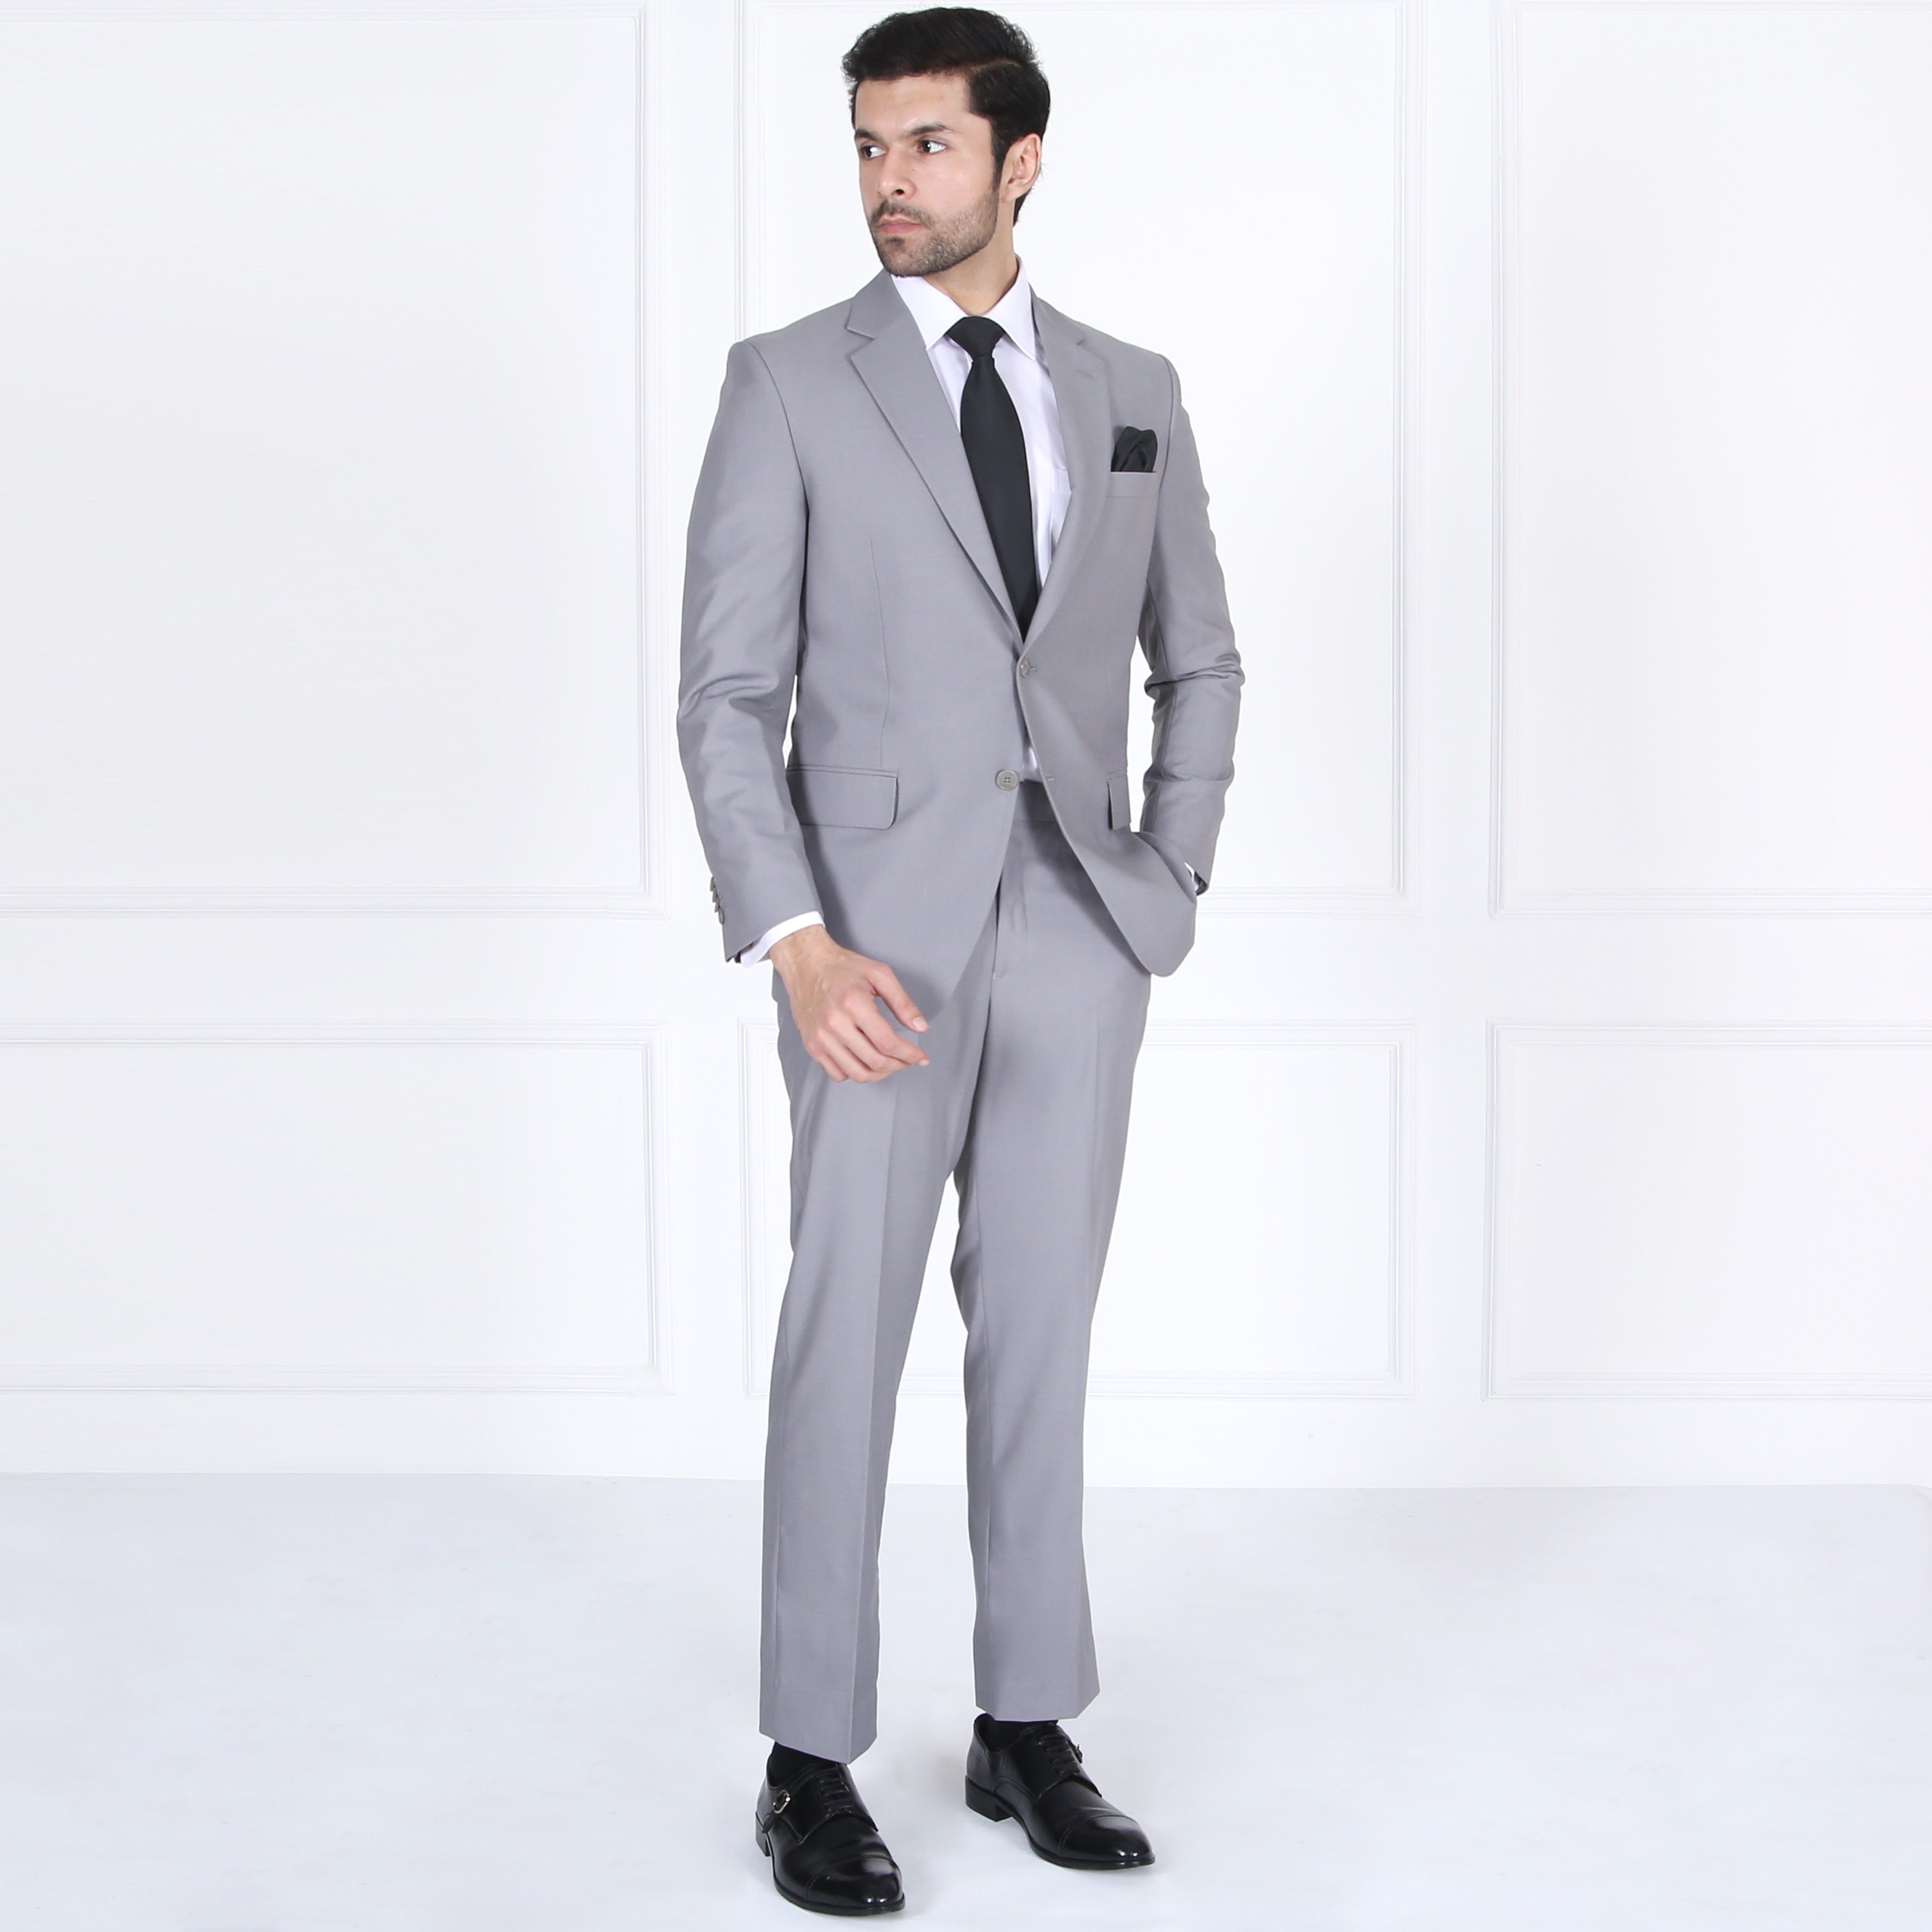 Men's Suit for Sale - Lahore, Karachi, Hyderabad, Narowal | Shop Men's ...